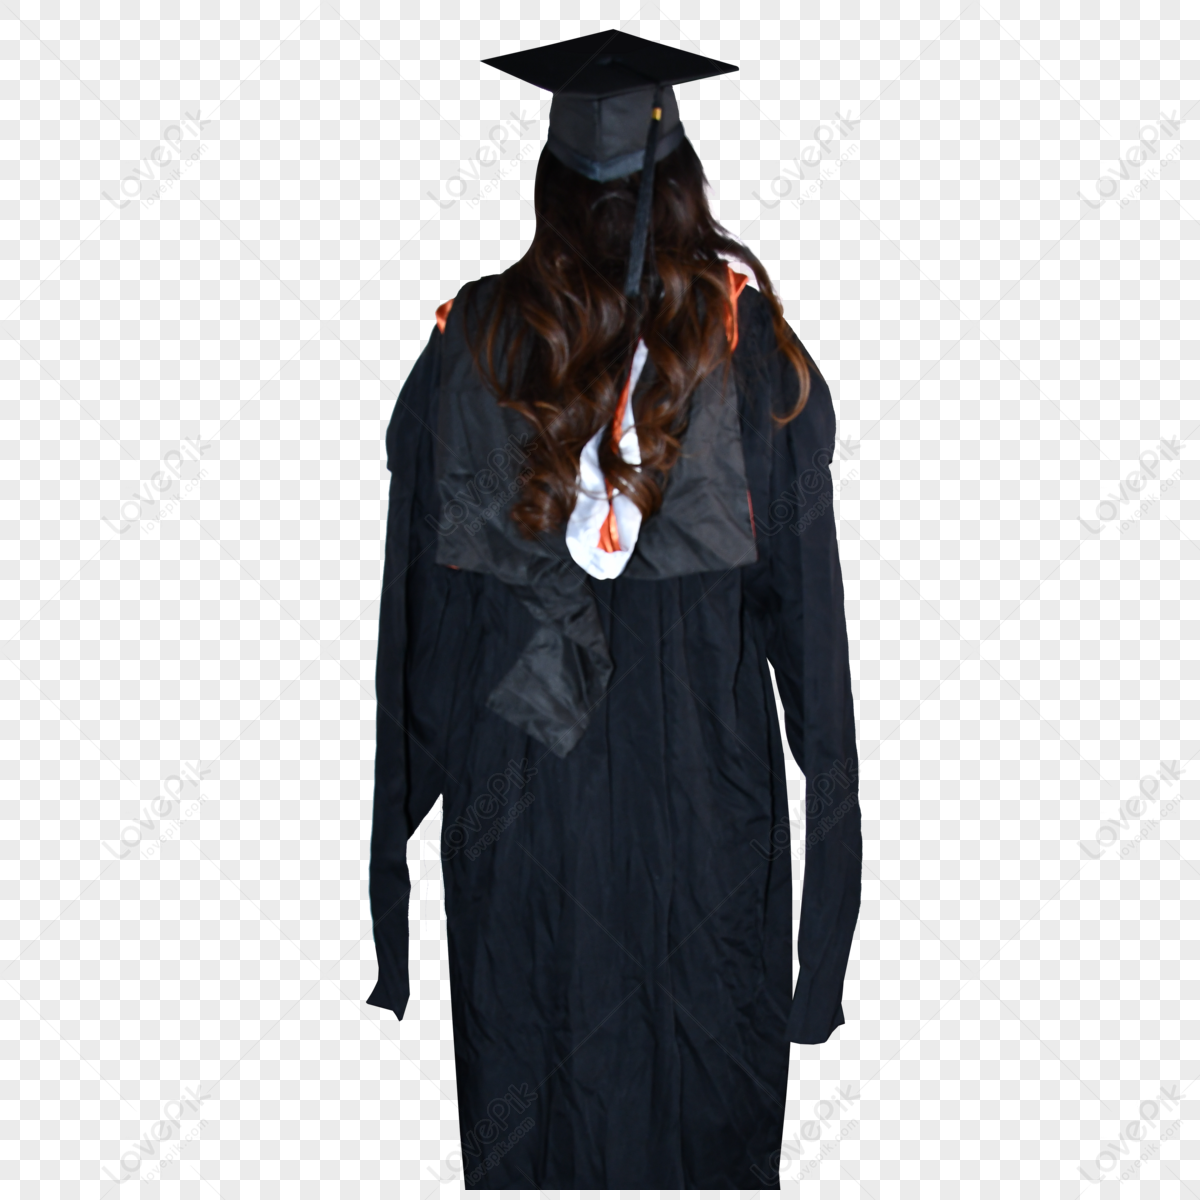 Graduation Suit Images, HD Pictures For Free Vectors Download - Lovepik.com